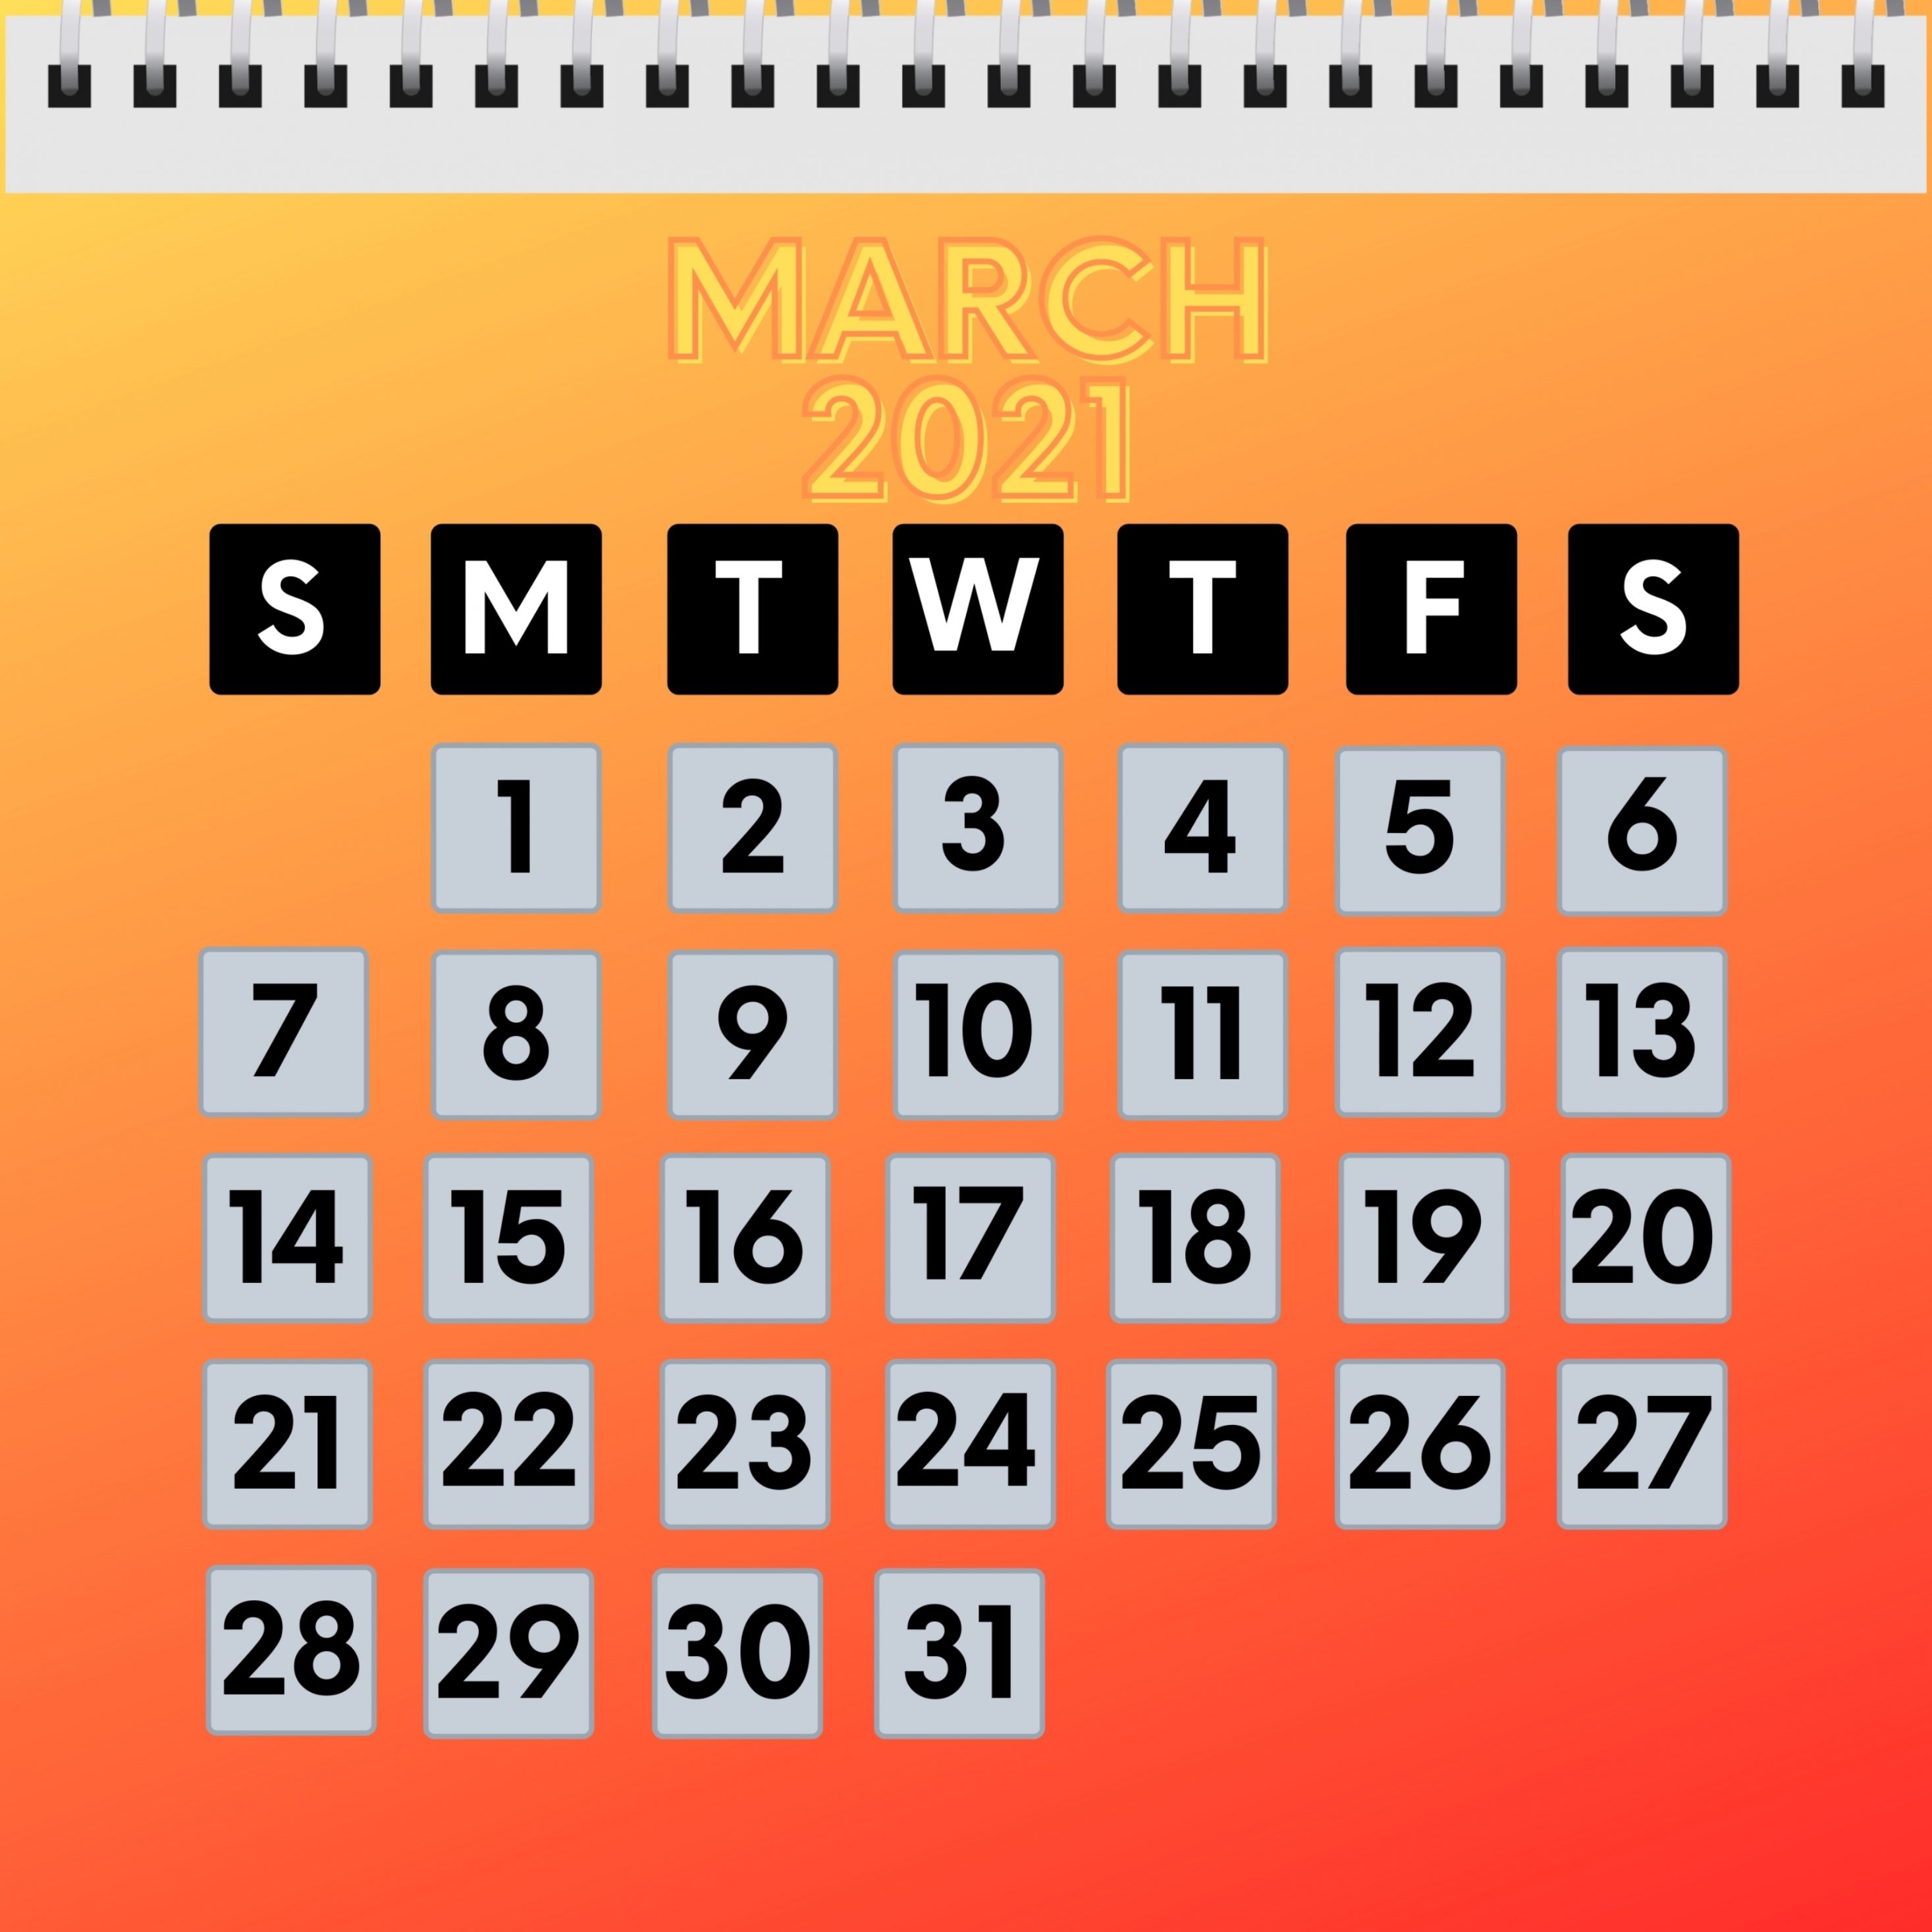 2934x2934 iOS iPad wallpaper 4k March 2021 Calendar iPad Wallpaper 2934x2934 pixels resolution